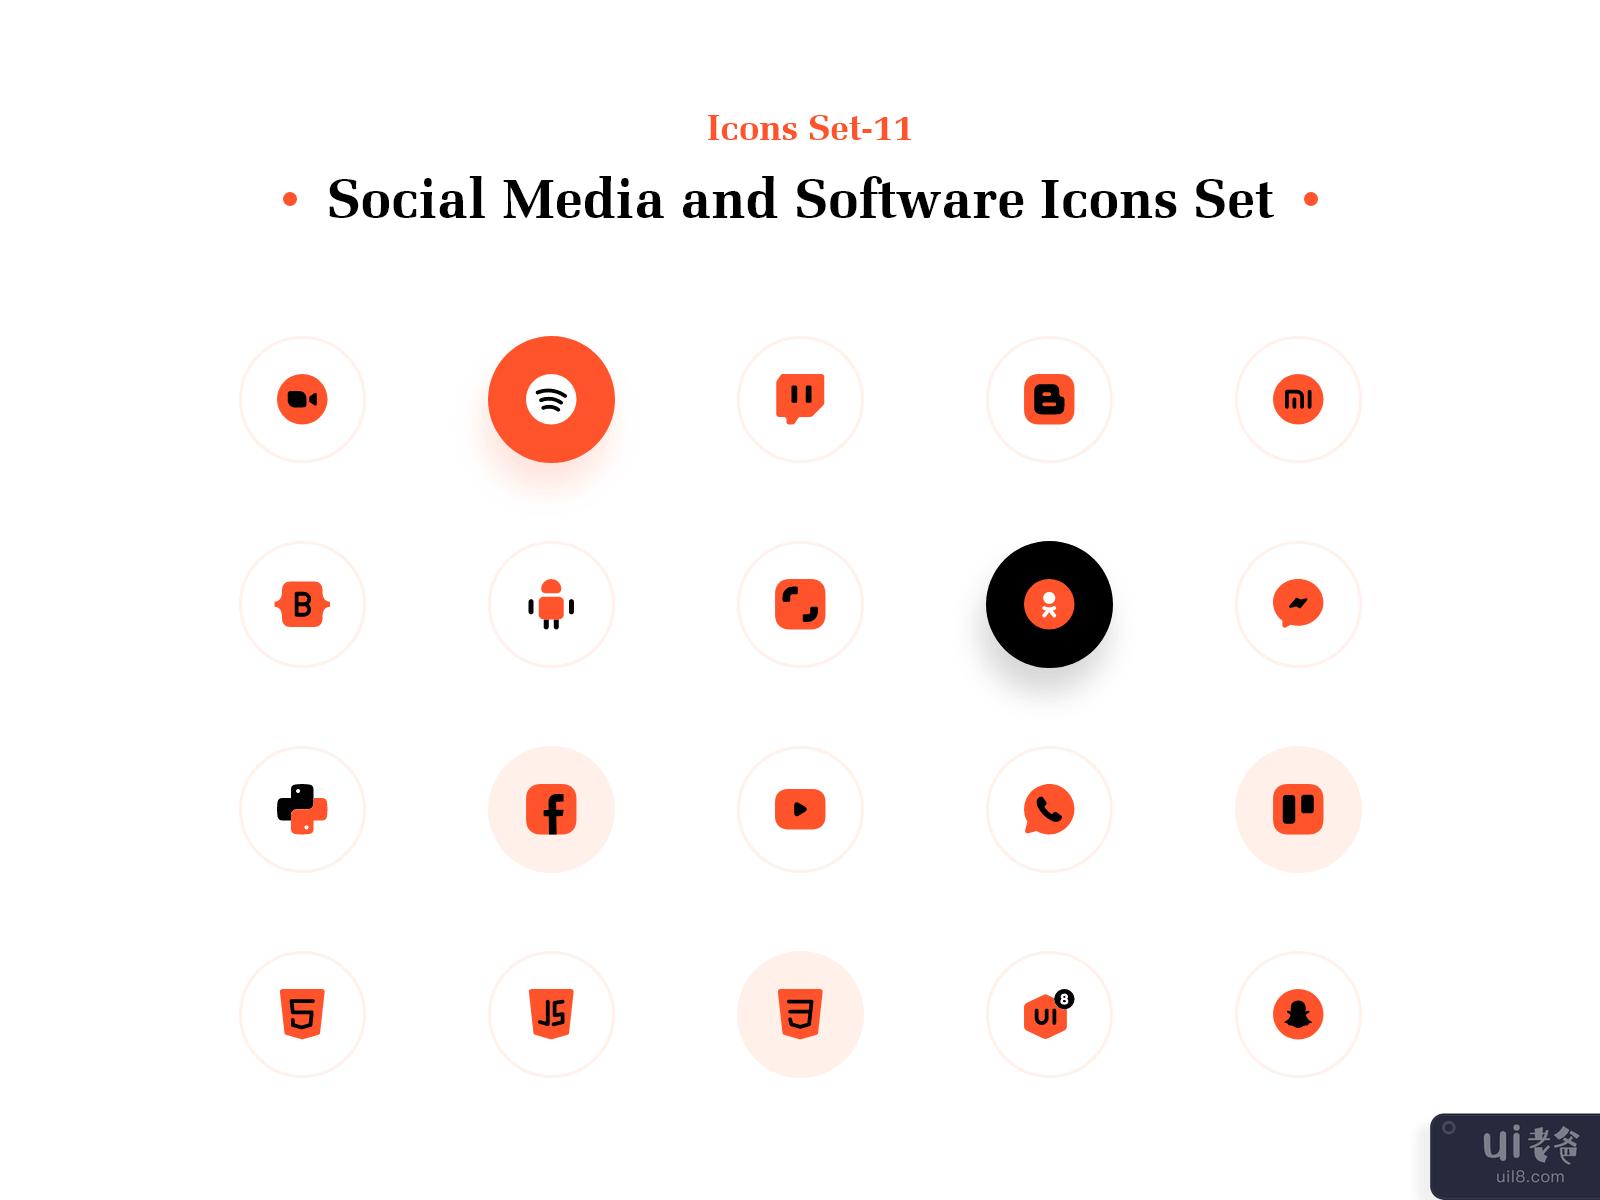 社交媒体和软件图标集(Social Media and Software Icons Set)插图